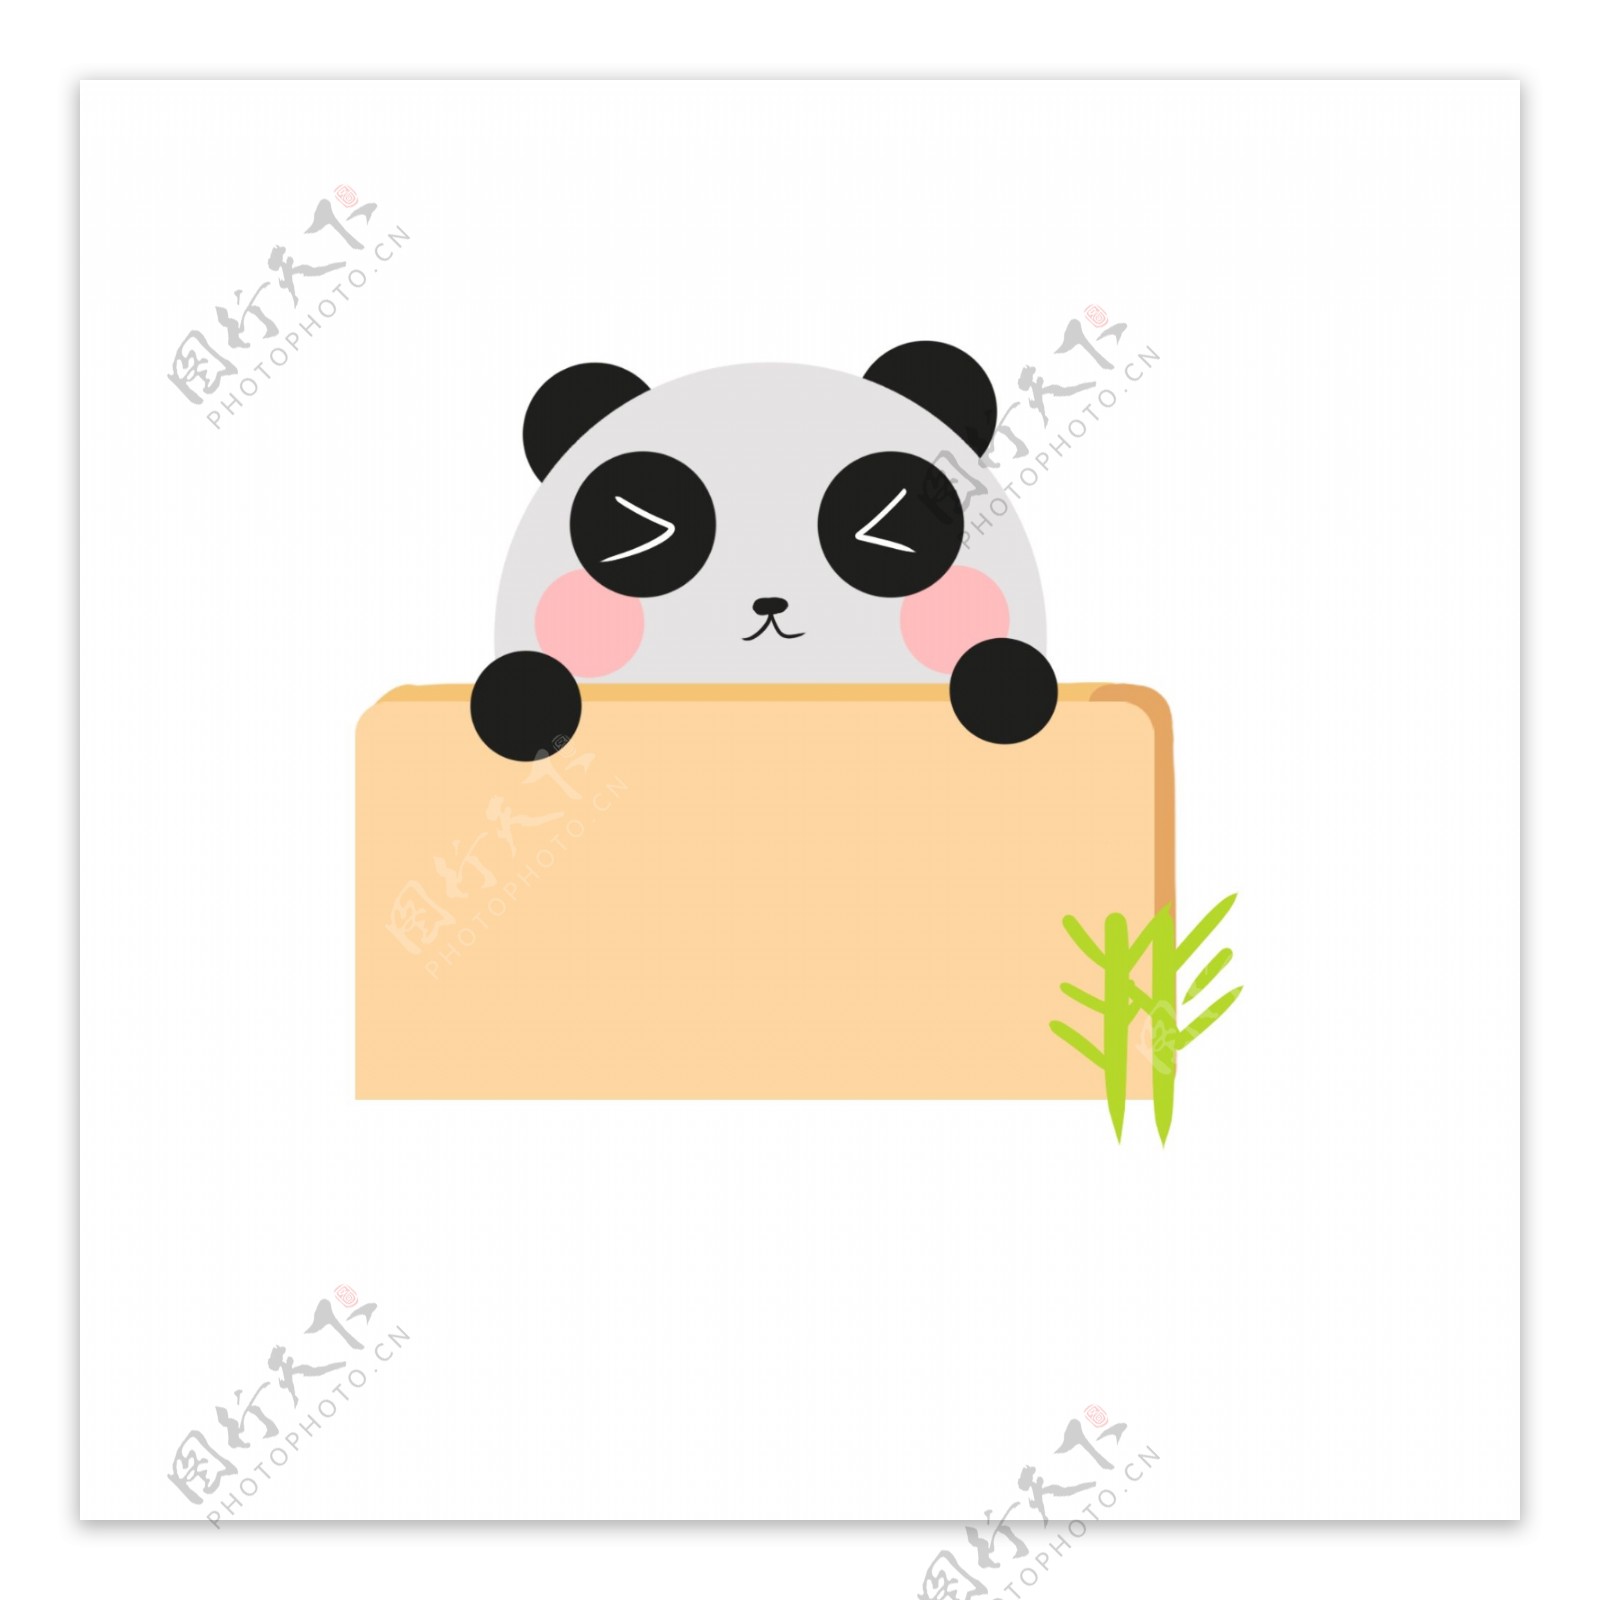 对话框边框气泡框卡通动物熊猫矢量商用元素